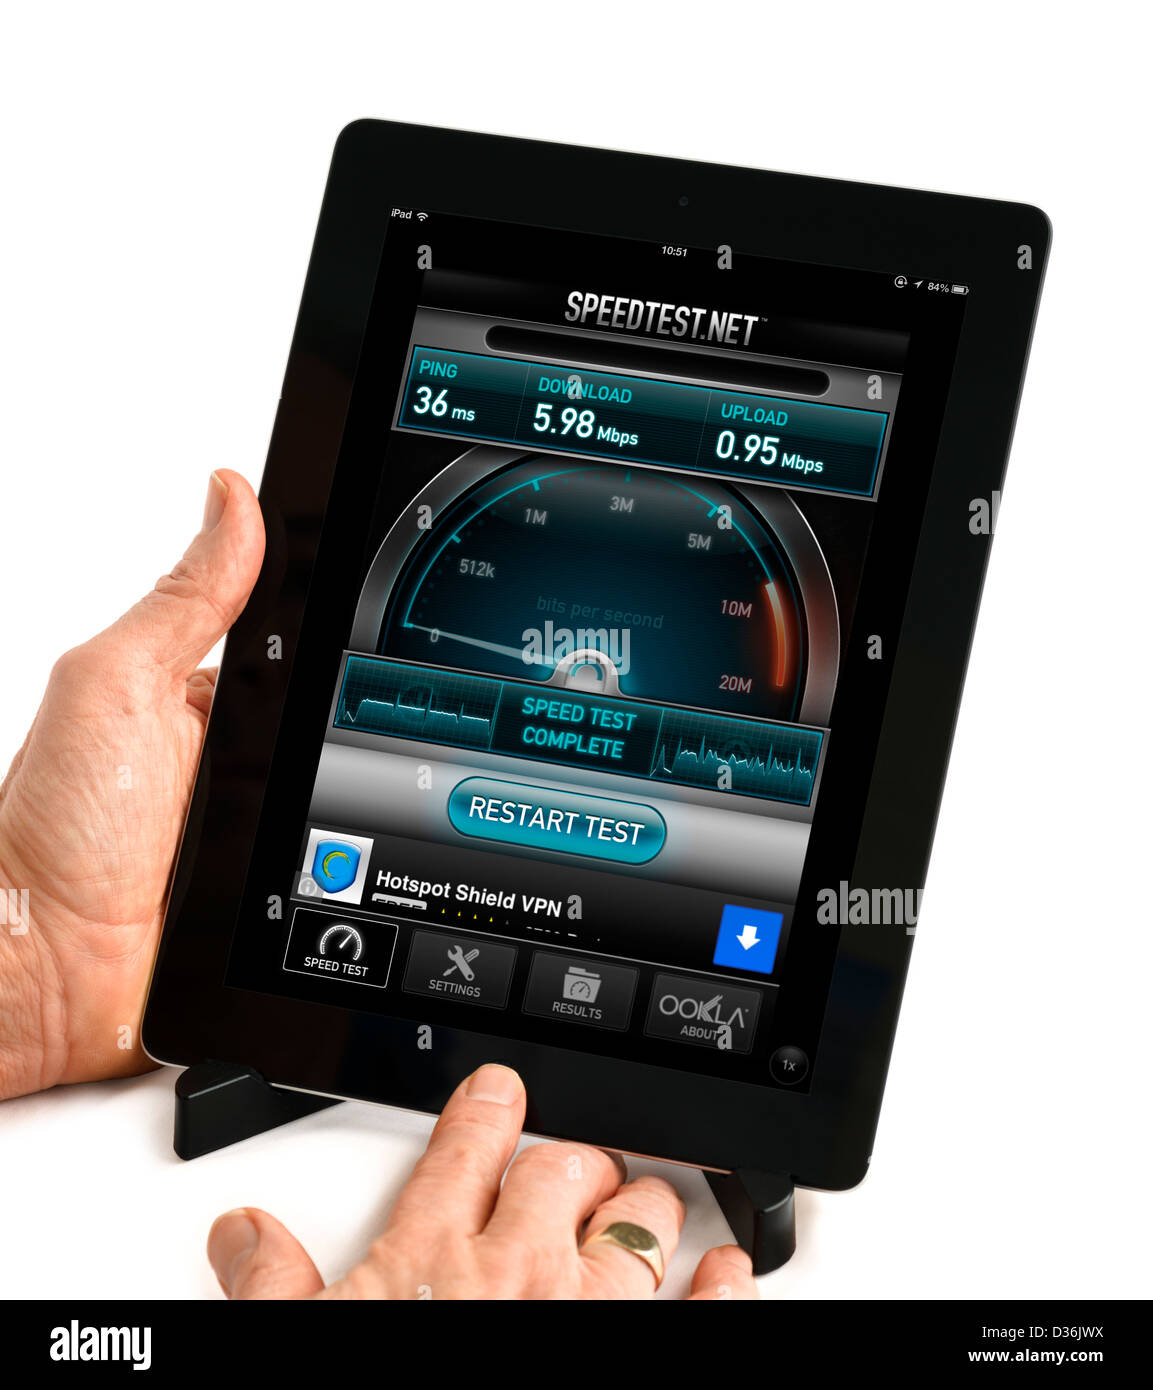 Utilizzando la banda larga Speedtest.net test di velocità app su una quarta generazione di Apple iPad Foto Stock